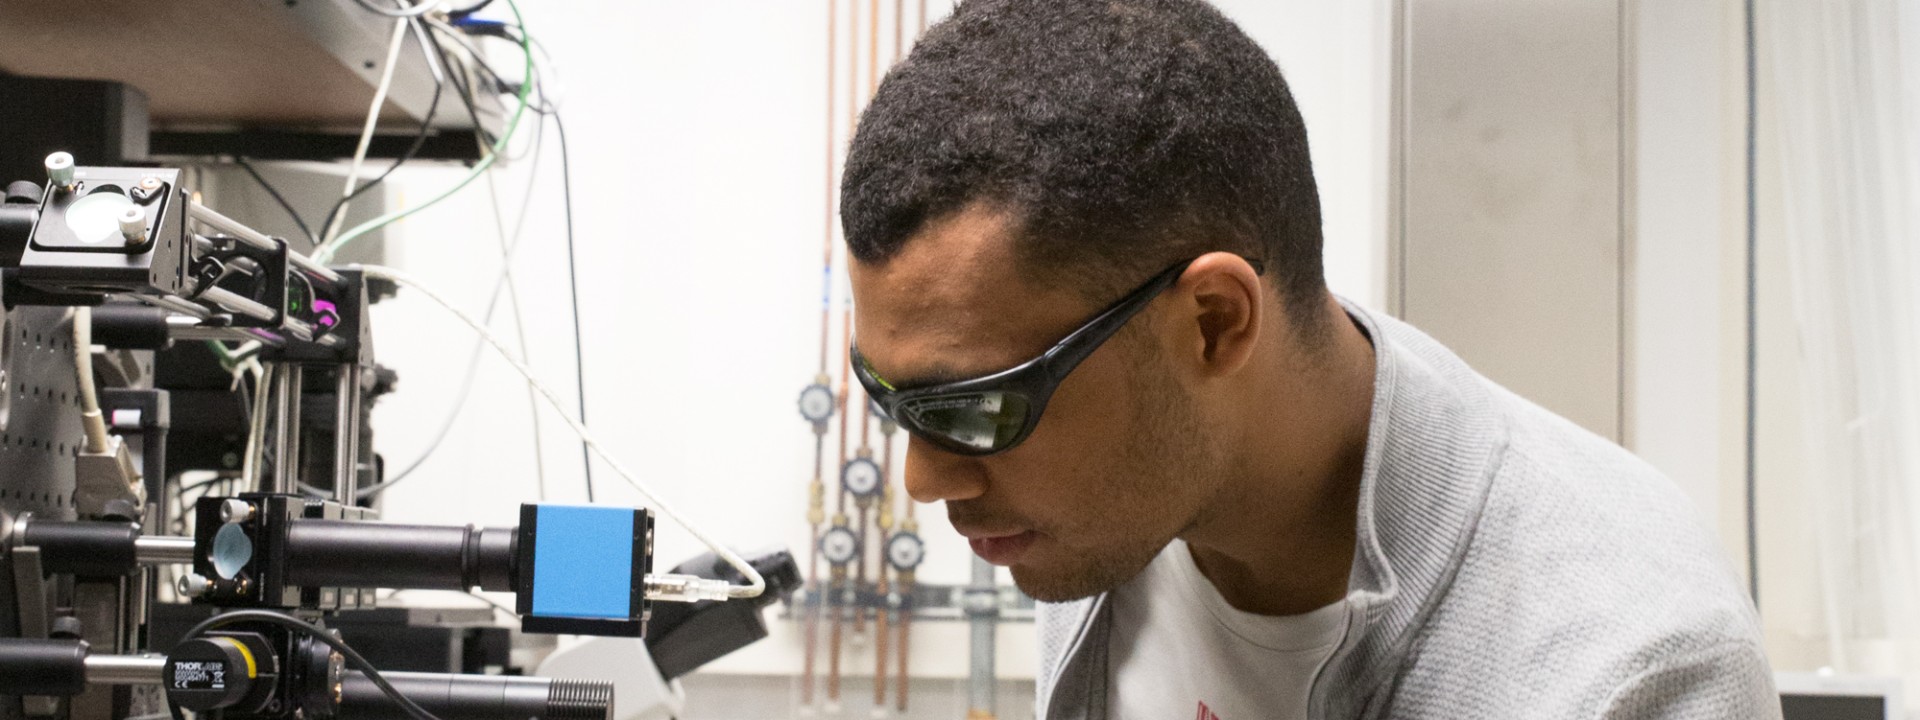 Studierender im Laserzentrum an Versuchsaufbau